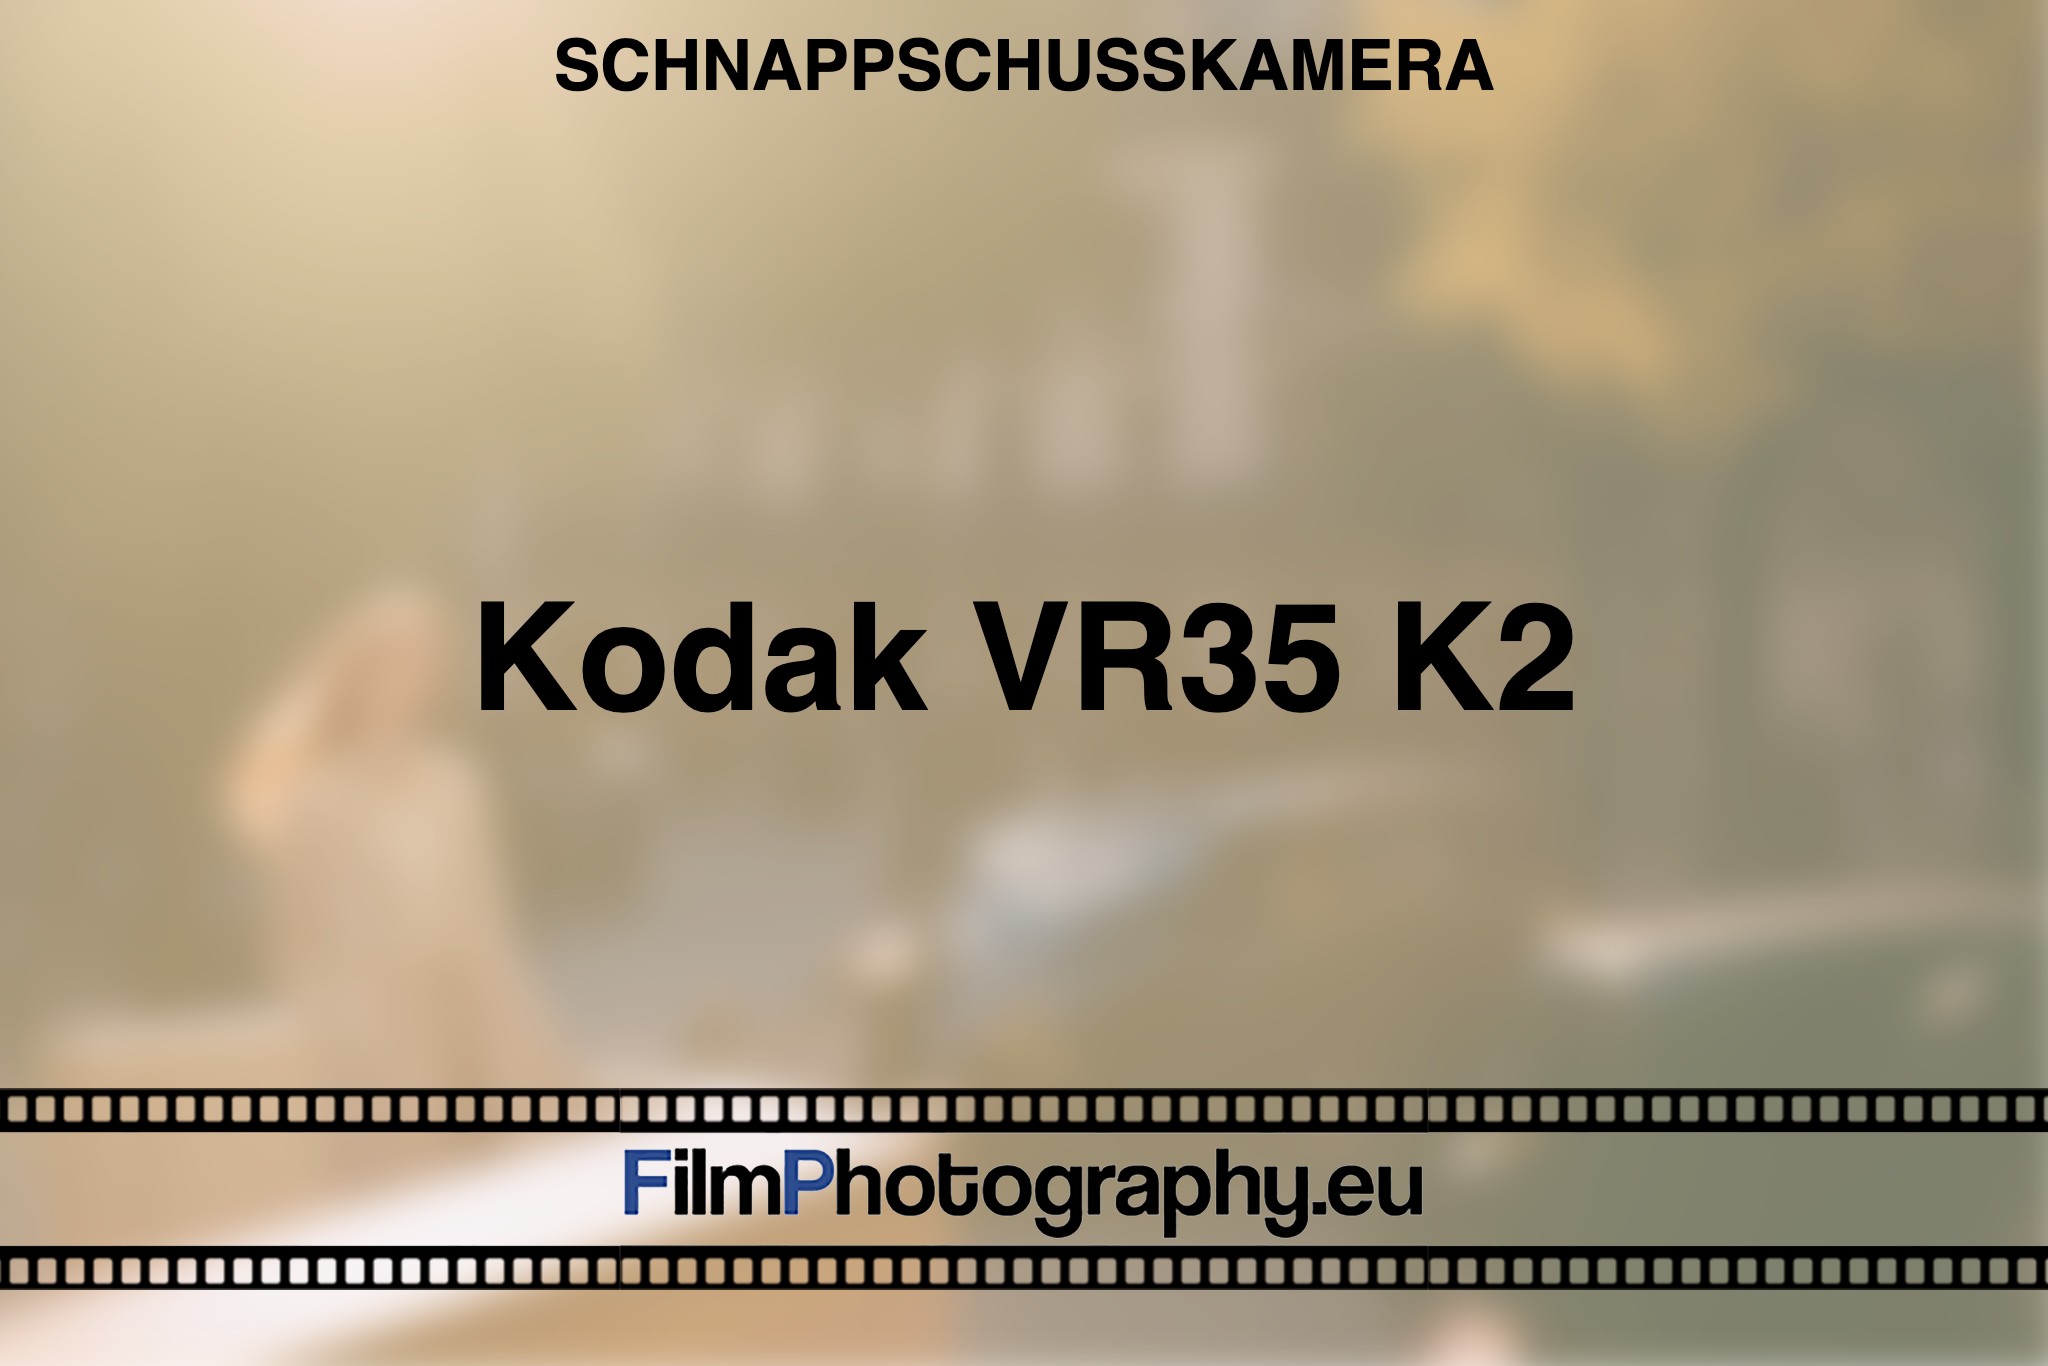 kodak-vr35-k2-schnappschusskamera-bnv